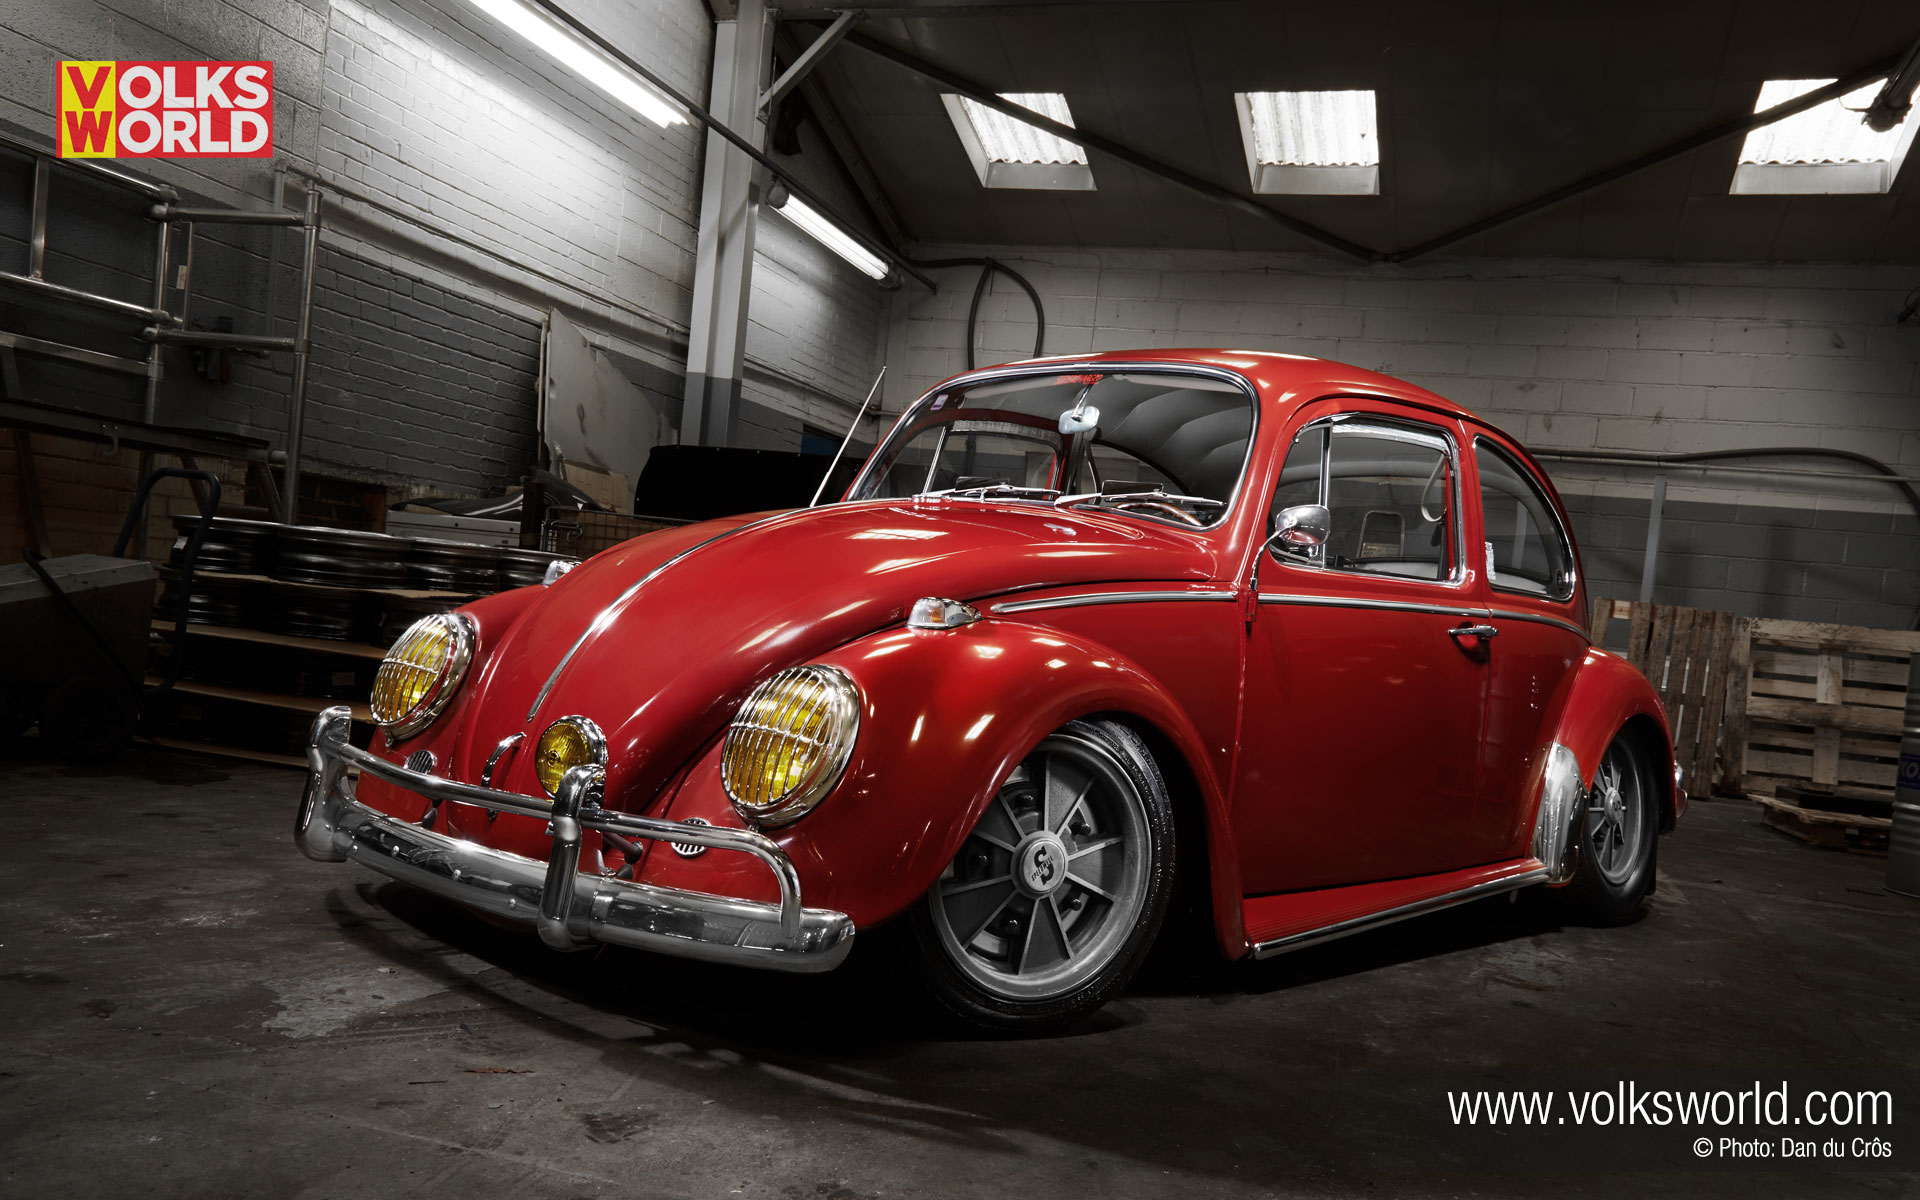 1965 VW Beetle   Best of 2014   VolksWorld 1920x1200